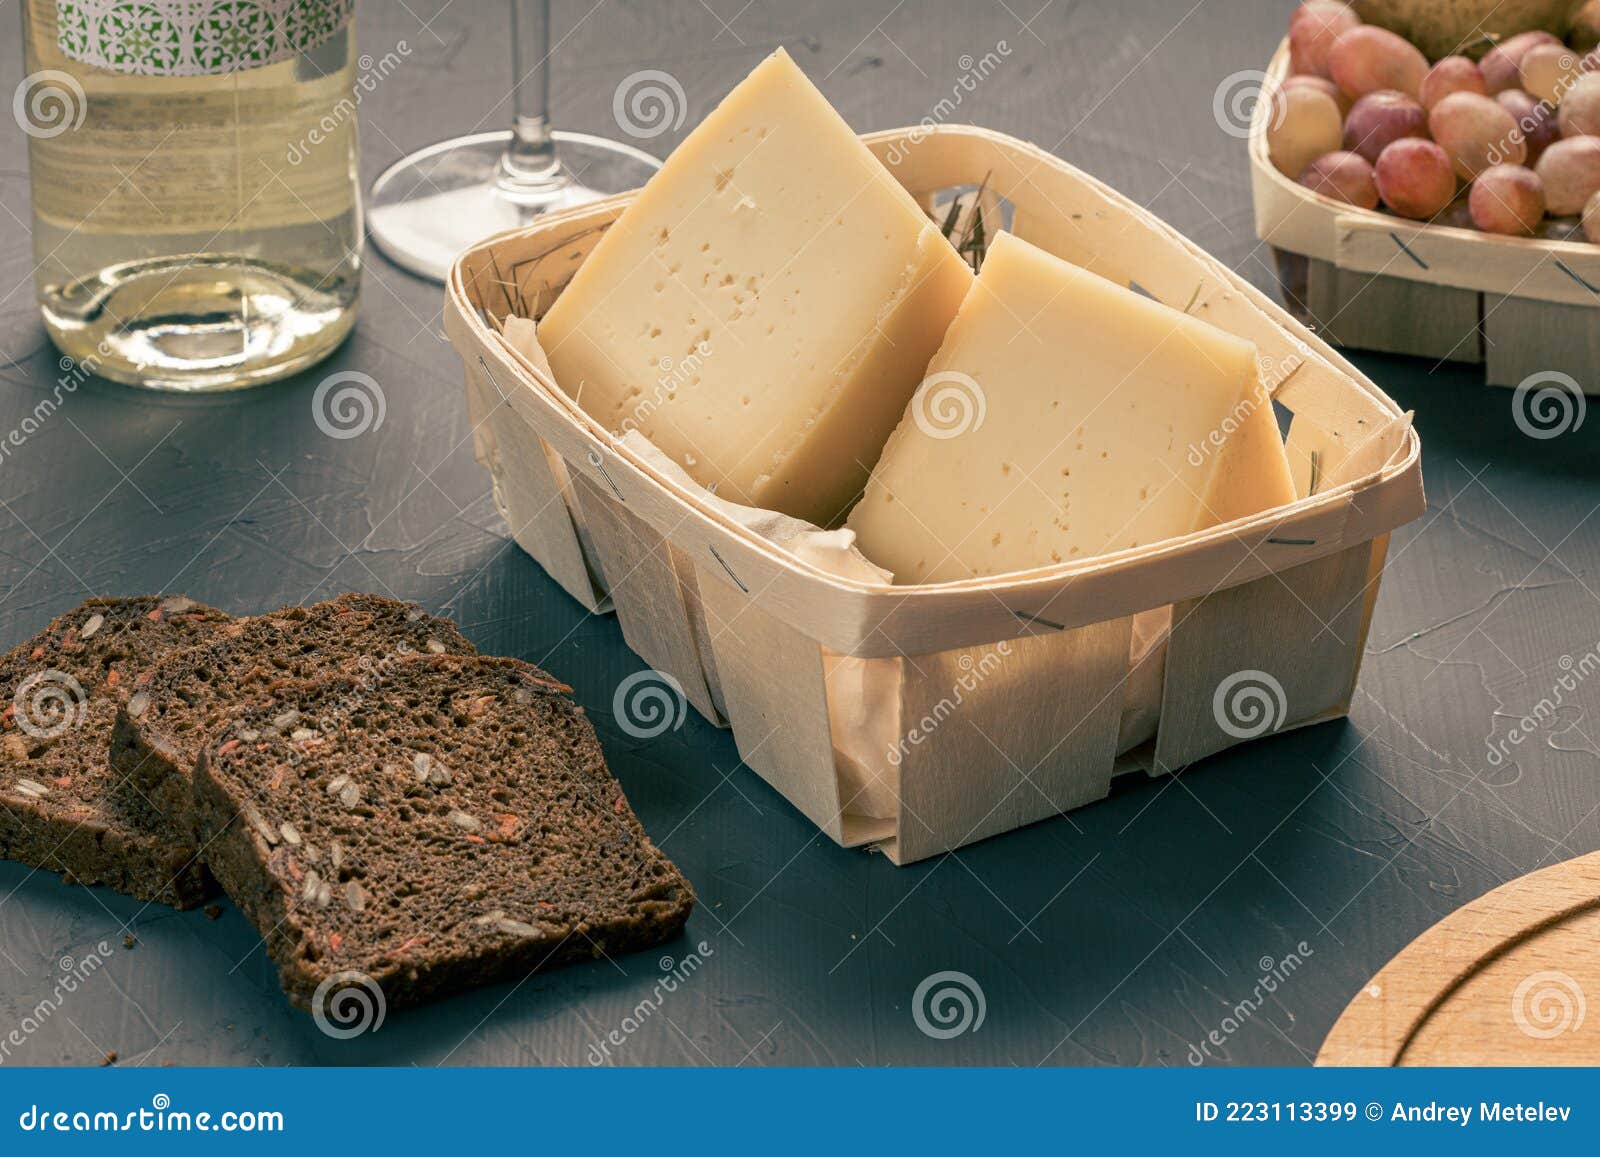 Как отличить натуральный сыр от подделки прямо в супермаркете: вот на что обратить внимание